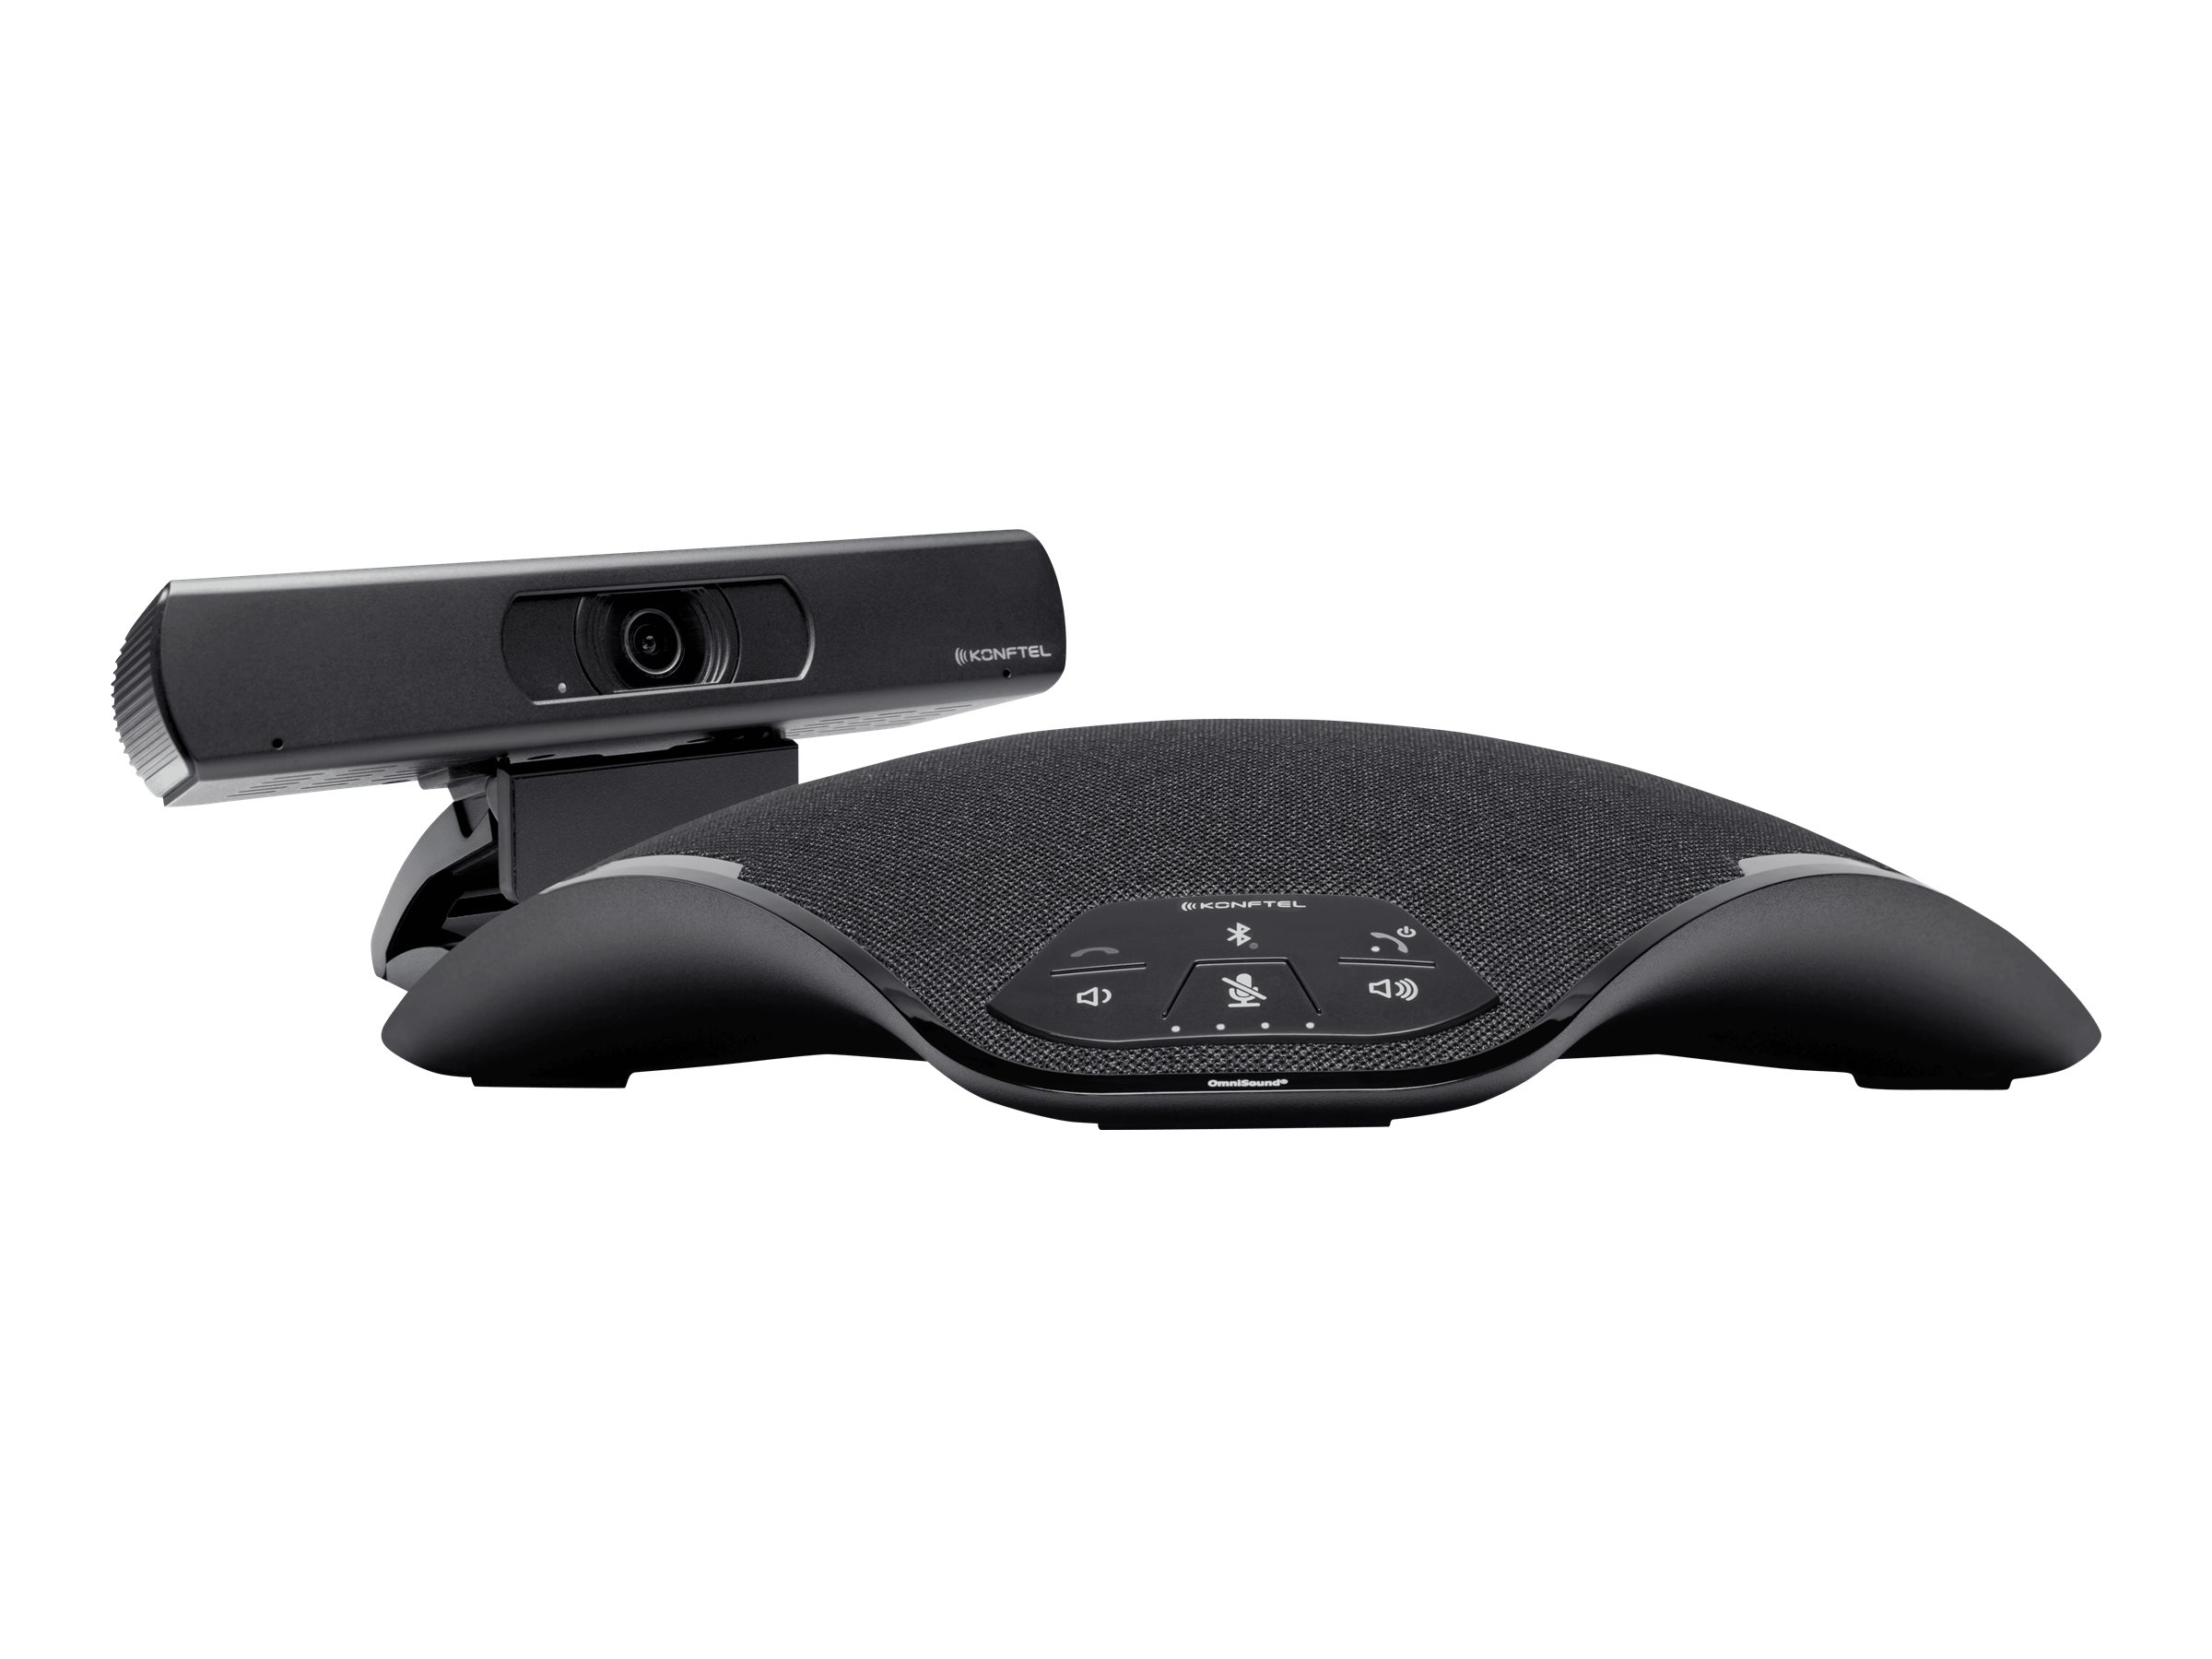 Konftel C2070 Attach - Kit für Videokonferenzen (Freisprechgerät, camera) - Schwarz, Charcoal Black